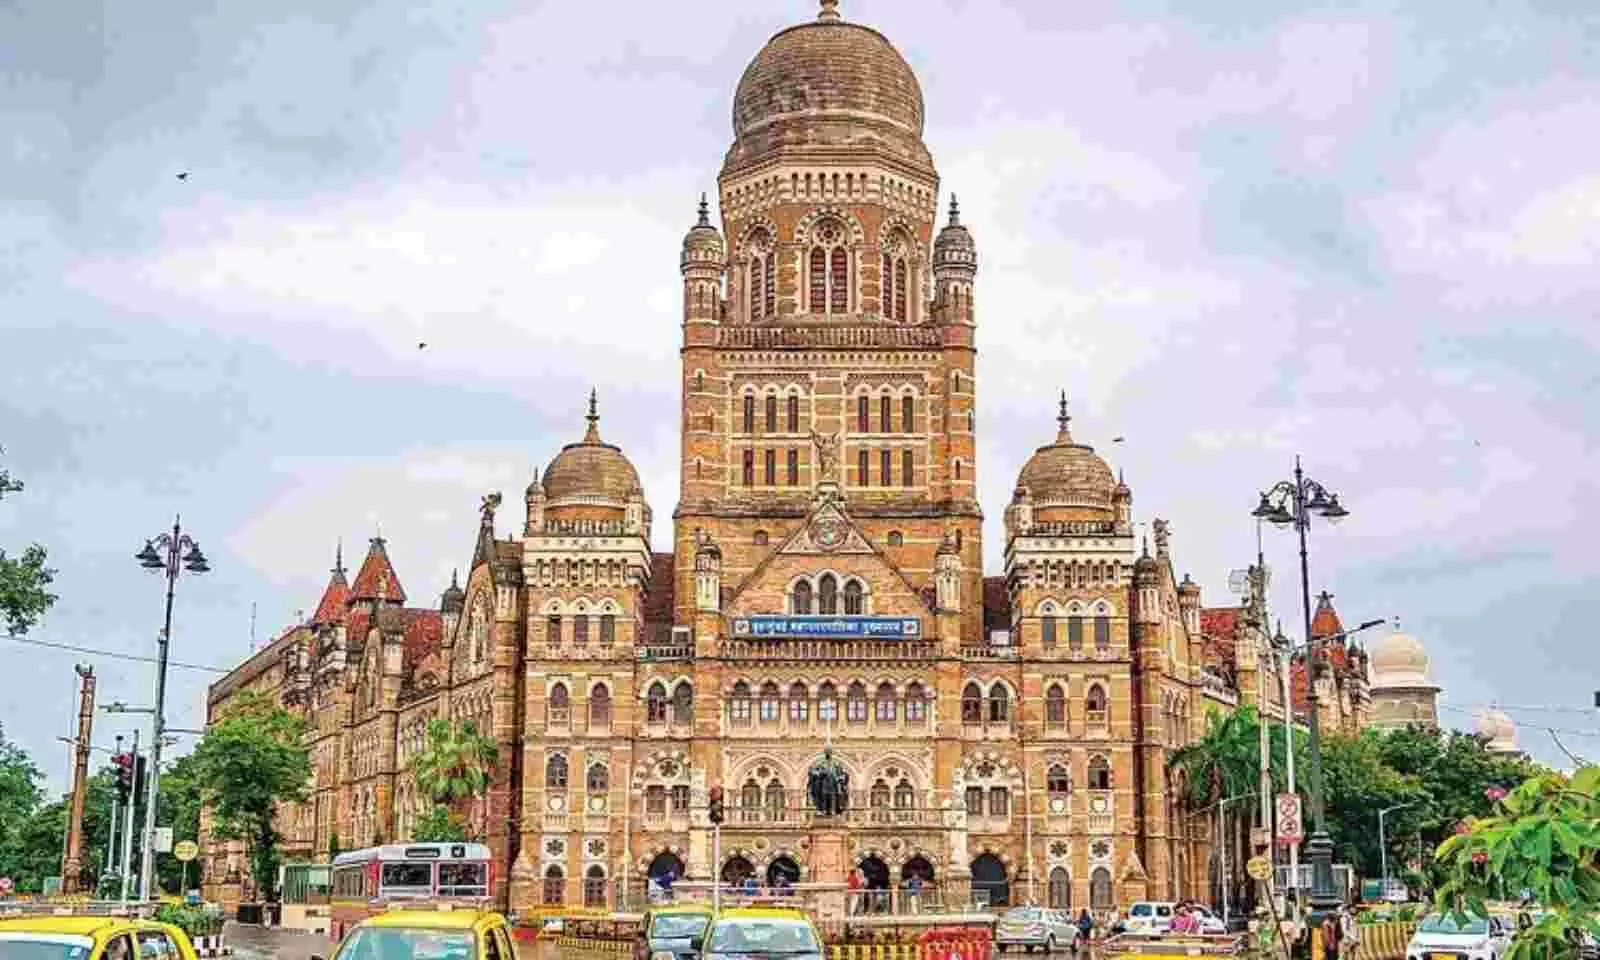 मुंबई महानगरपालिका गुजराती उम्मीदवारों के साथ हुआ भेदभाव तो महंगा पड सकता है भाजपा को, गुजरातियों के लिए बिछाया है विरोधियों ने लाल कारपेट